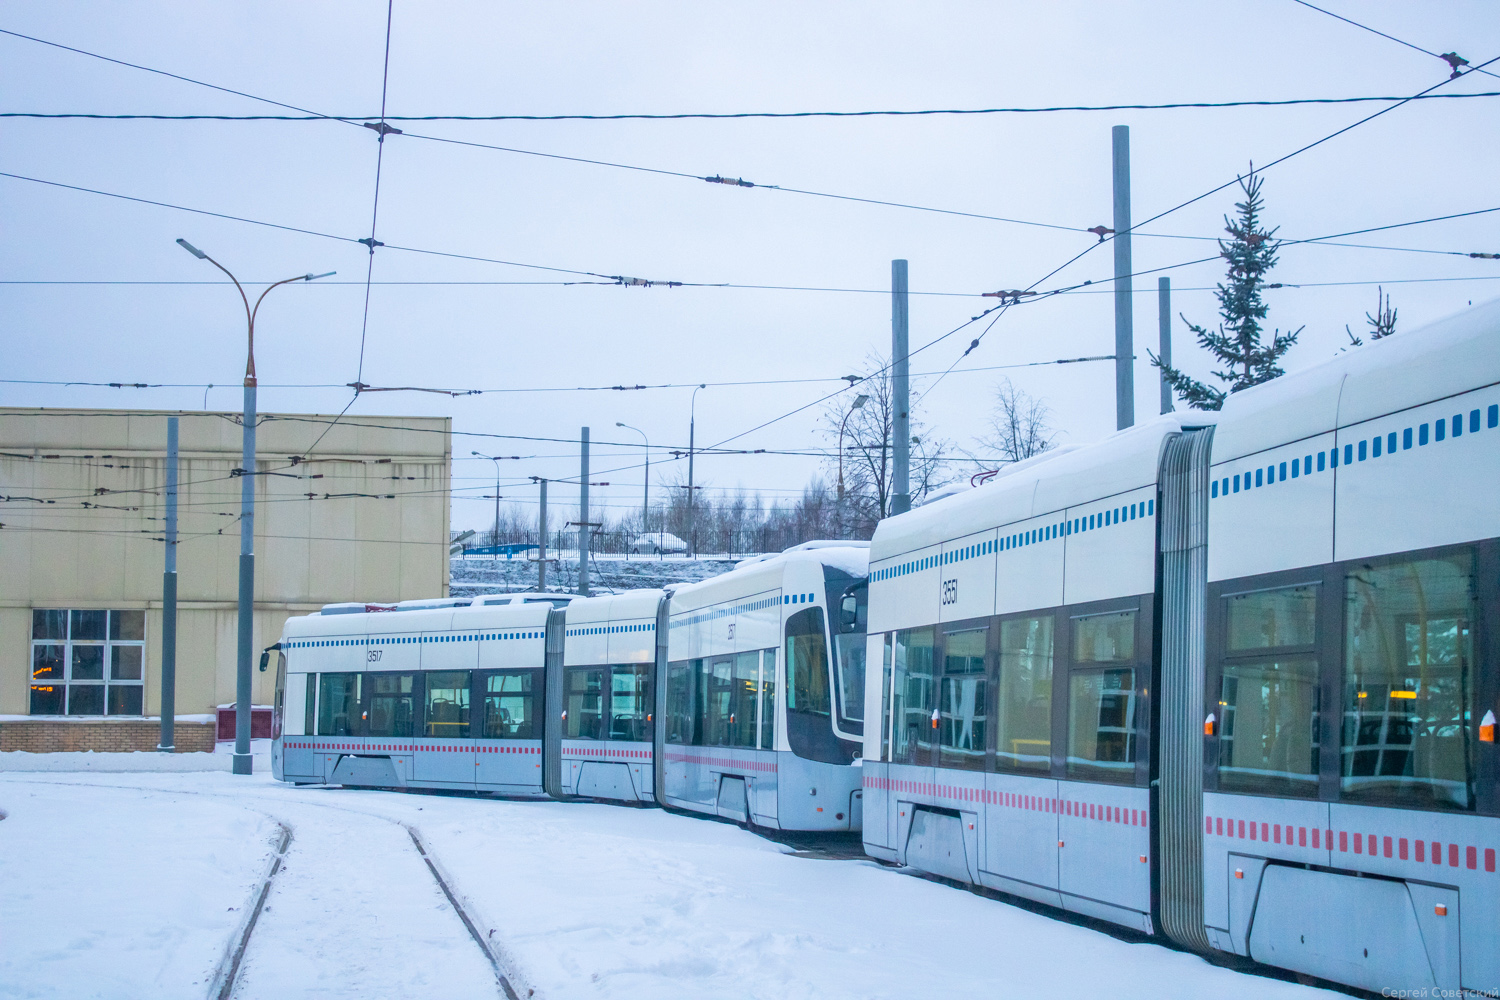 Moskau — Tram depots: [3] Krasnopresnenskoye. New site in Strogino